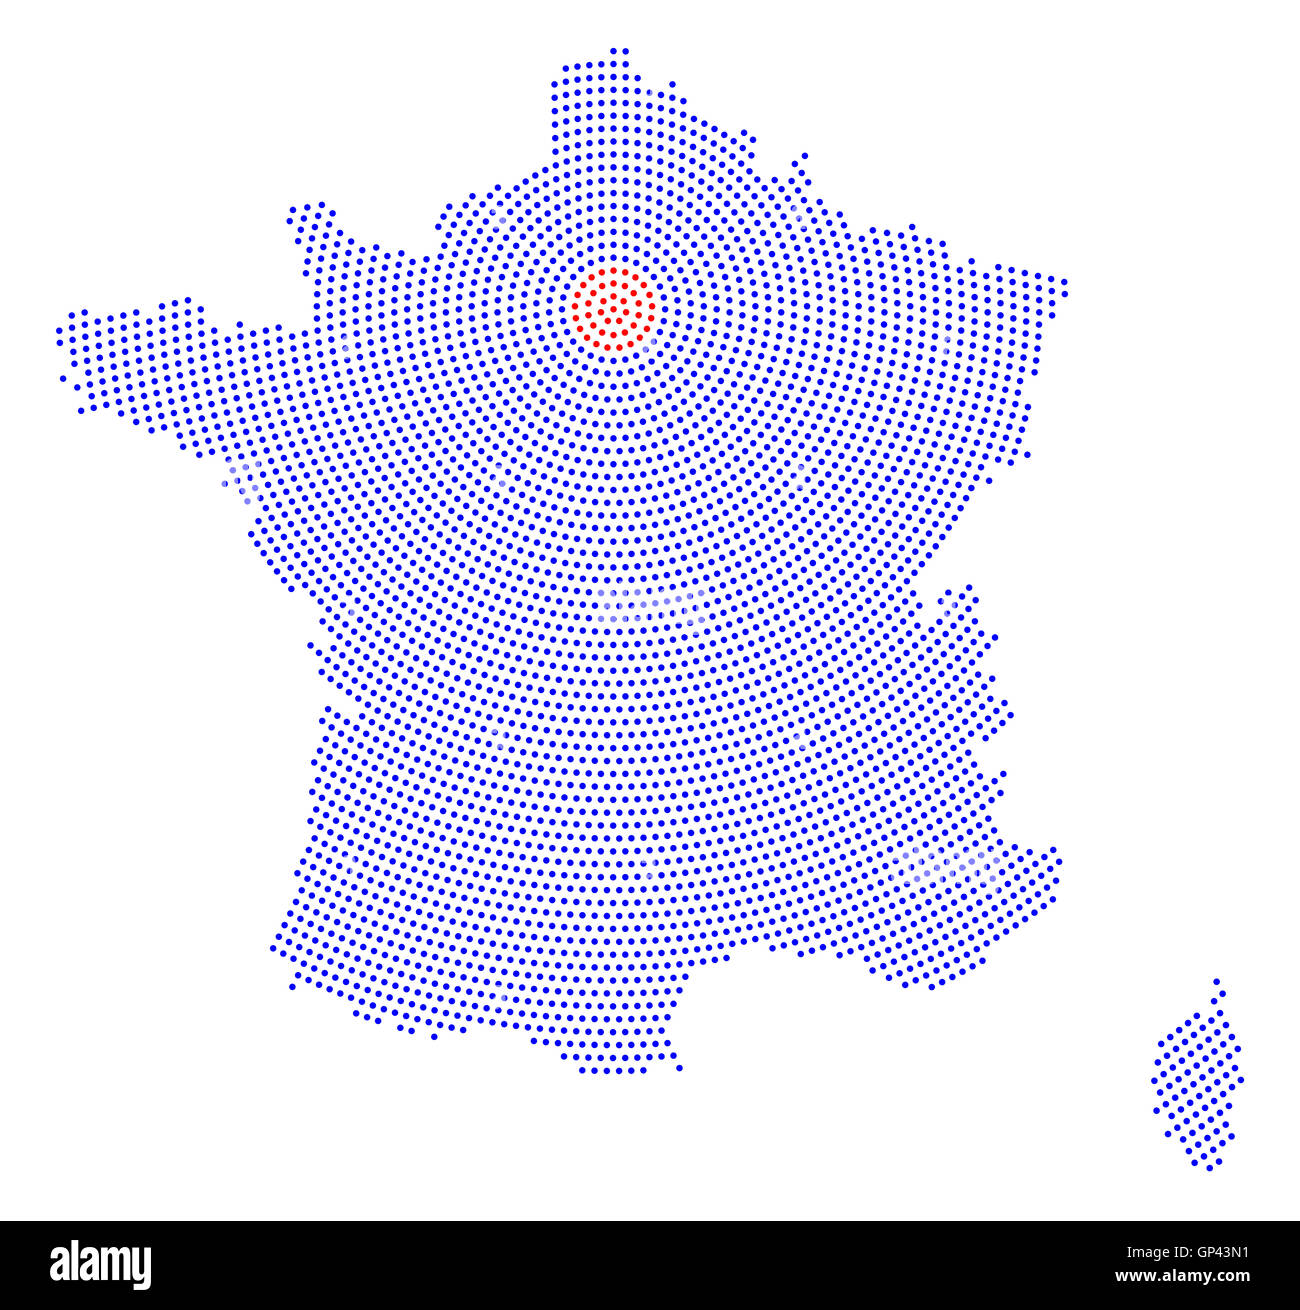 Mappa Francia dot radiale pattern. Punti blu che va dalla capitale Parigi verso l'esterno e formare la sagoma esagonale della Francia. Foto Stock